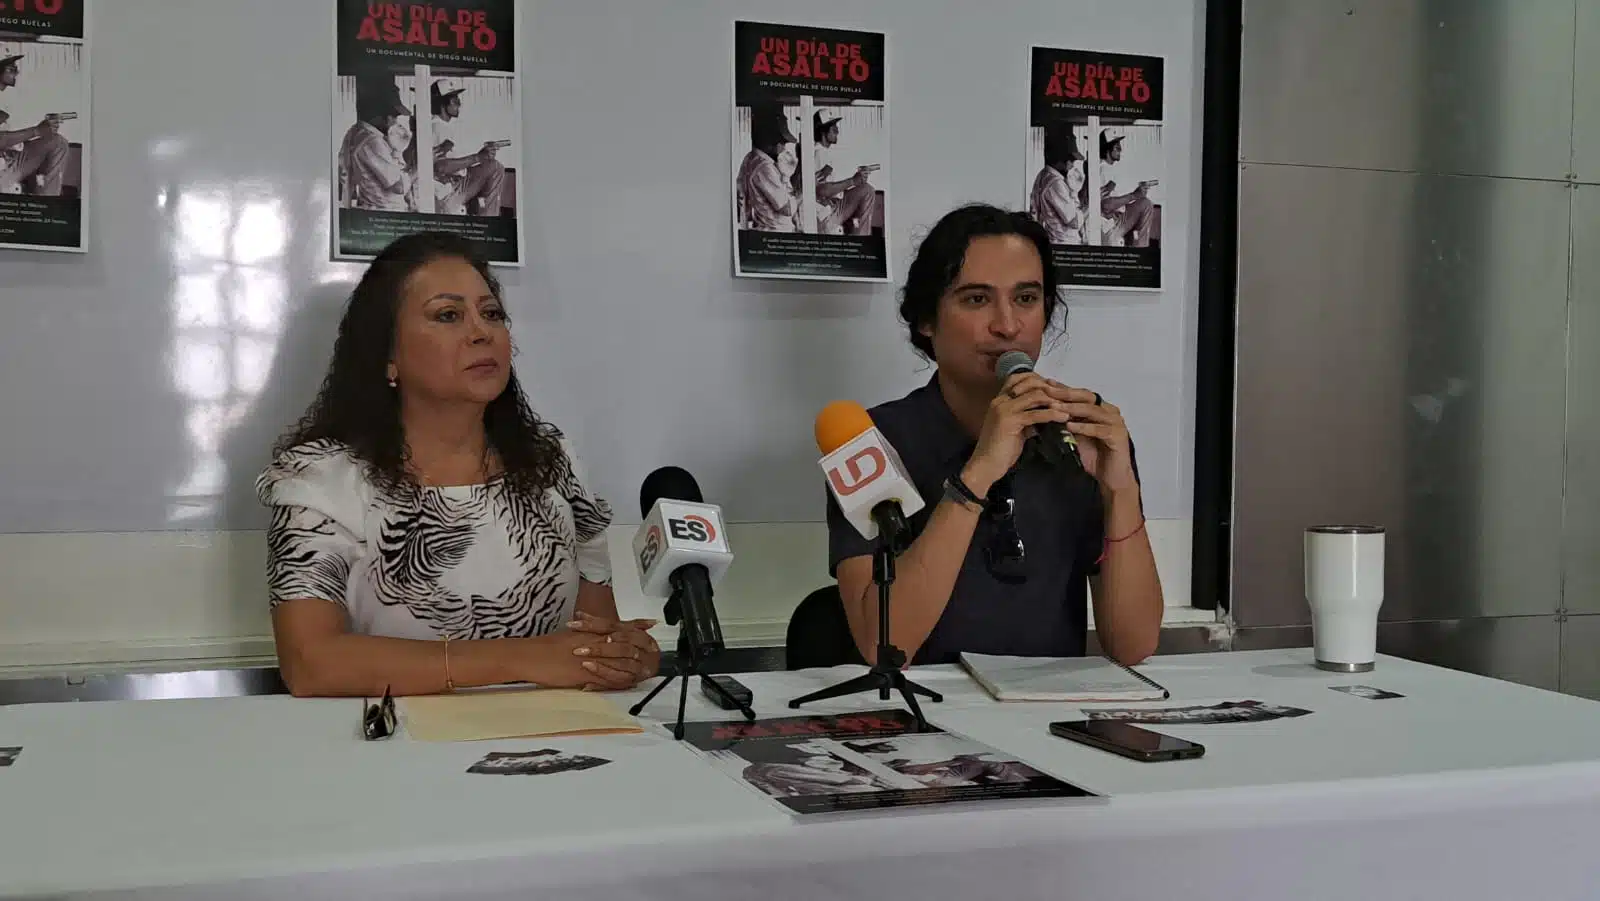 El largometraje Un día de asalto, del cineasta mochitense Diego Benjamín Ruelas Juárez, será proyectado en el teatro Ferrusquilla.